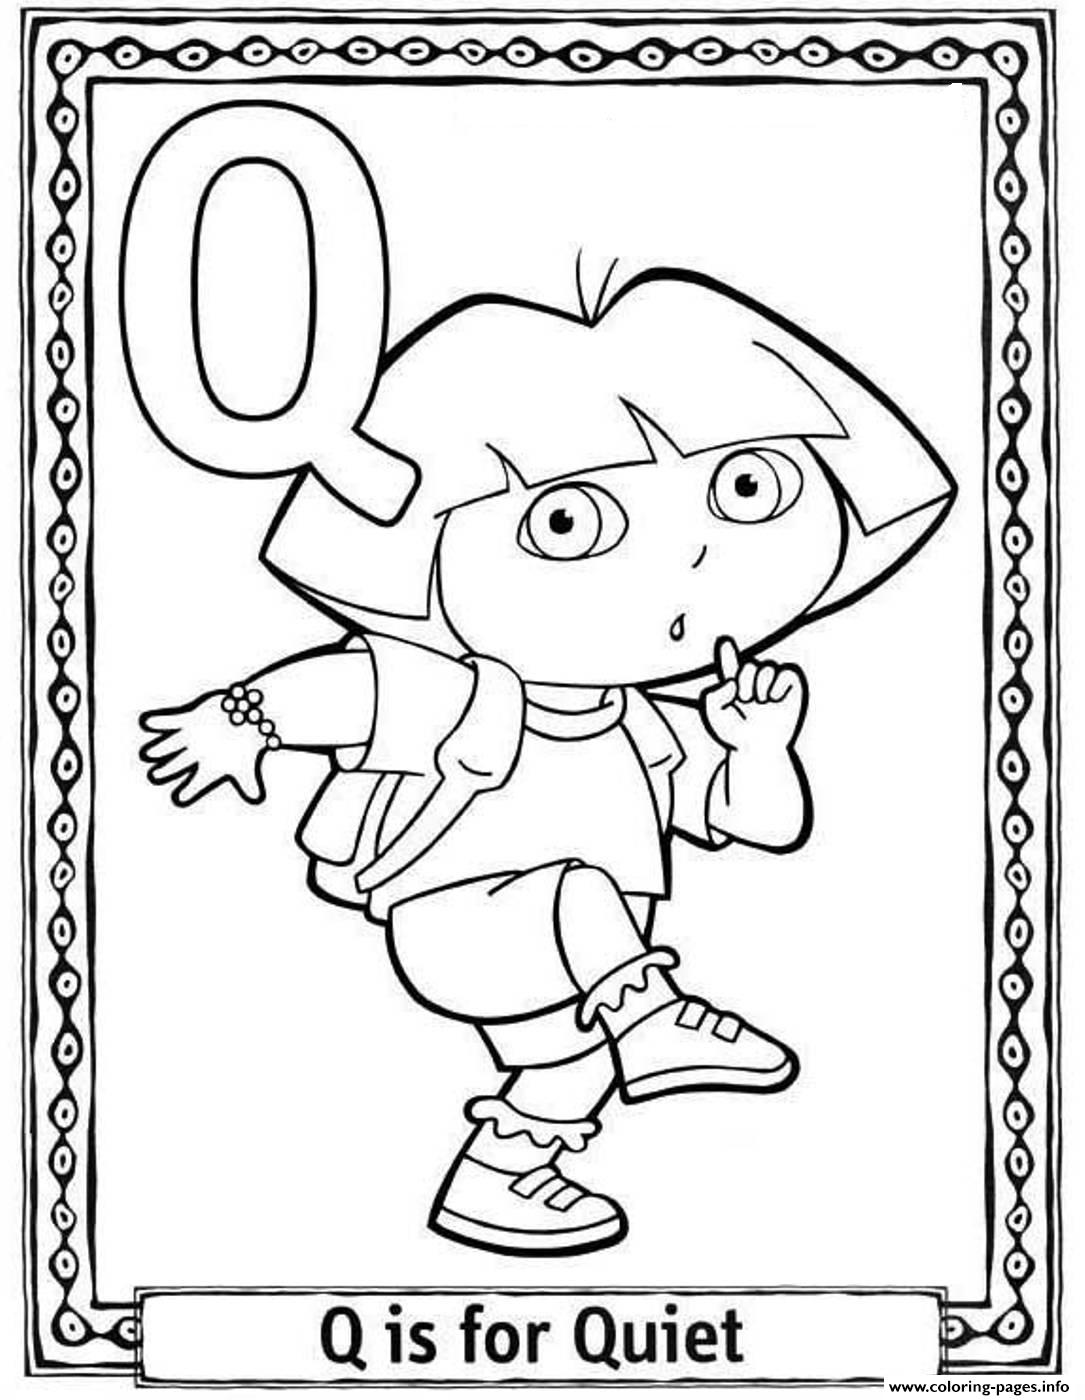 Dora Quiet Alphabet S0227 coloring pages